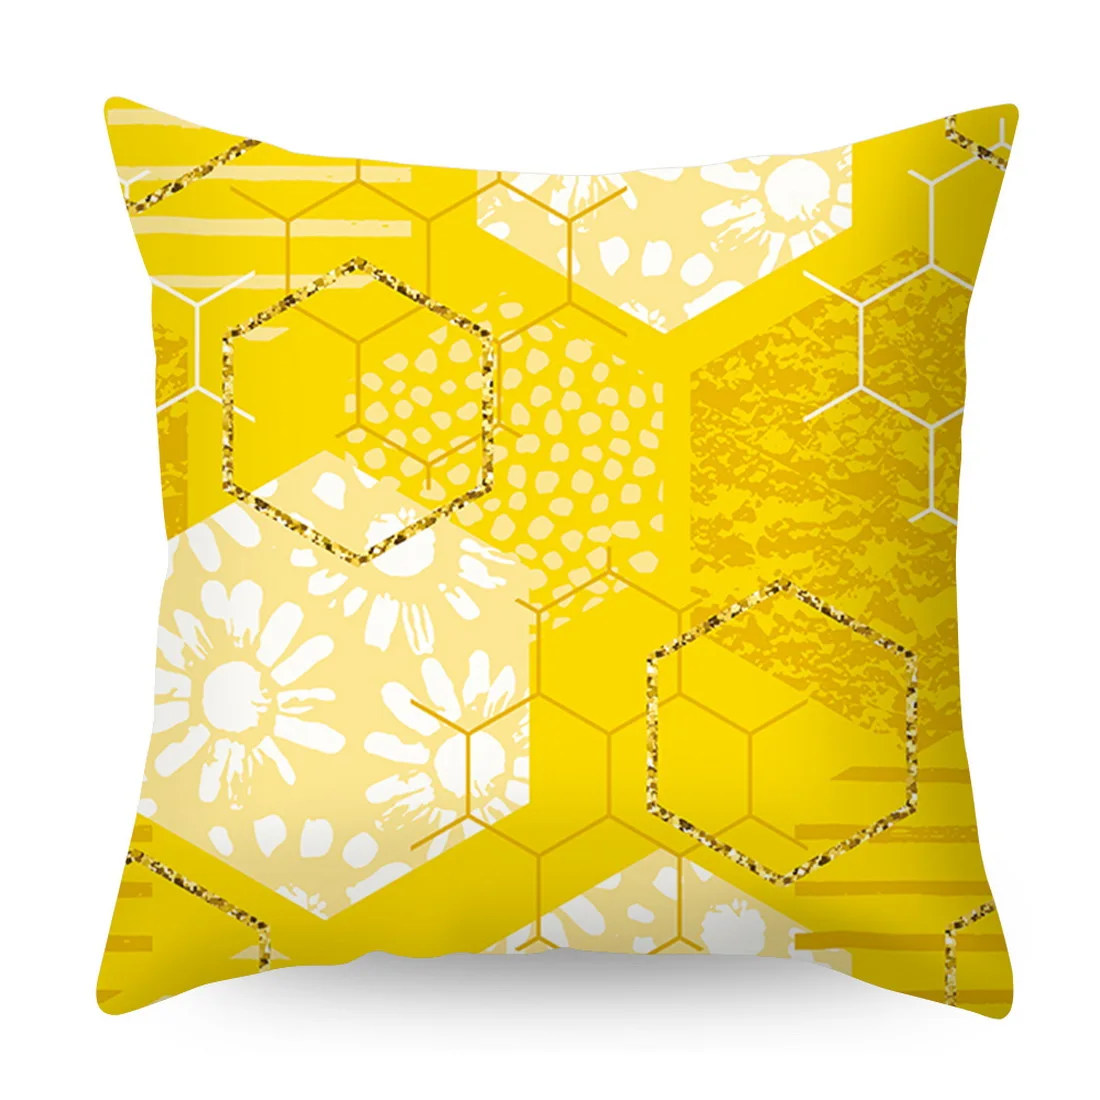 Urijk размером 45*45 см в желтую полоску Подушка Чехол геометрический диванная подушка крышка Печать Подушка Чехол Спальня для офиса - Цвет: A